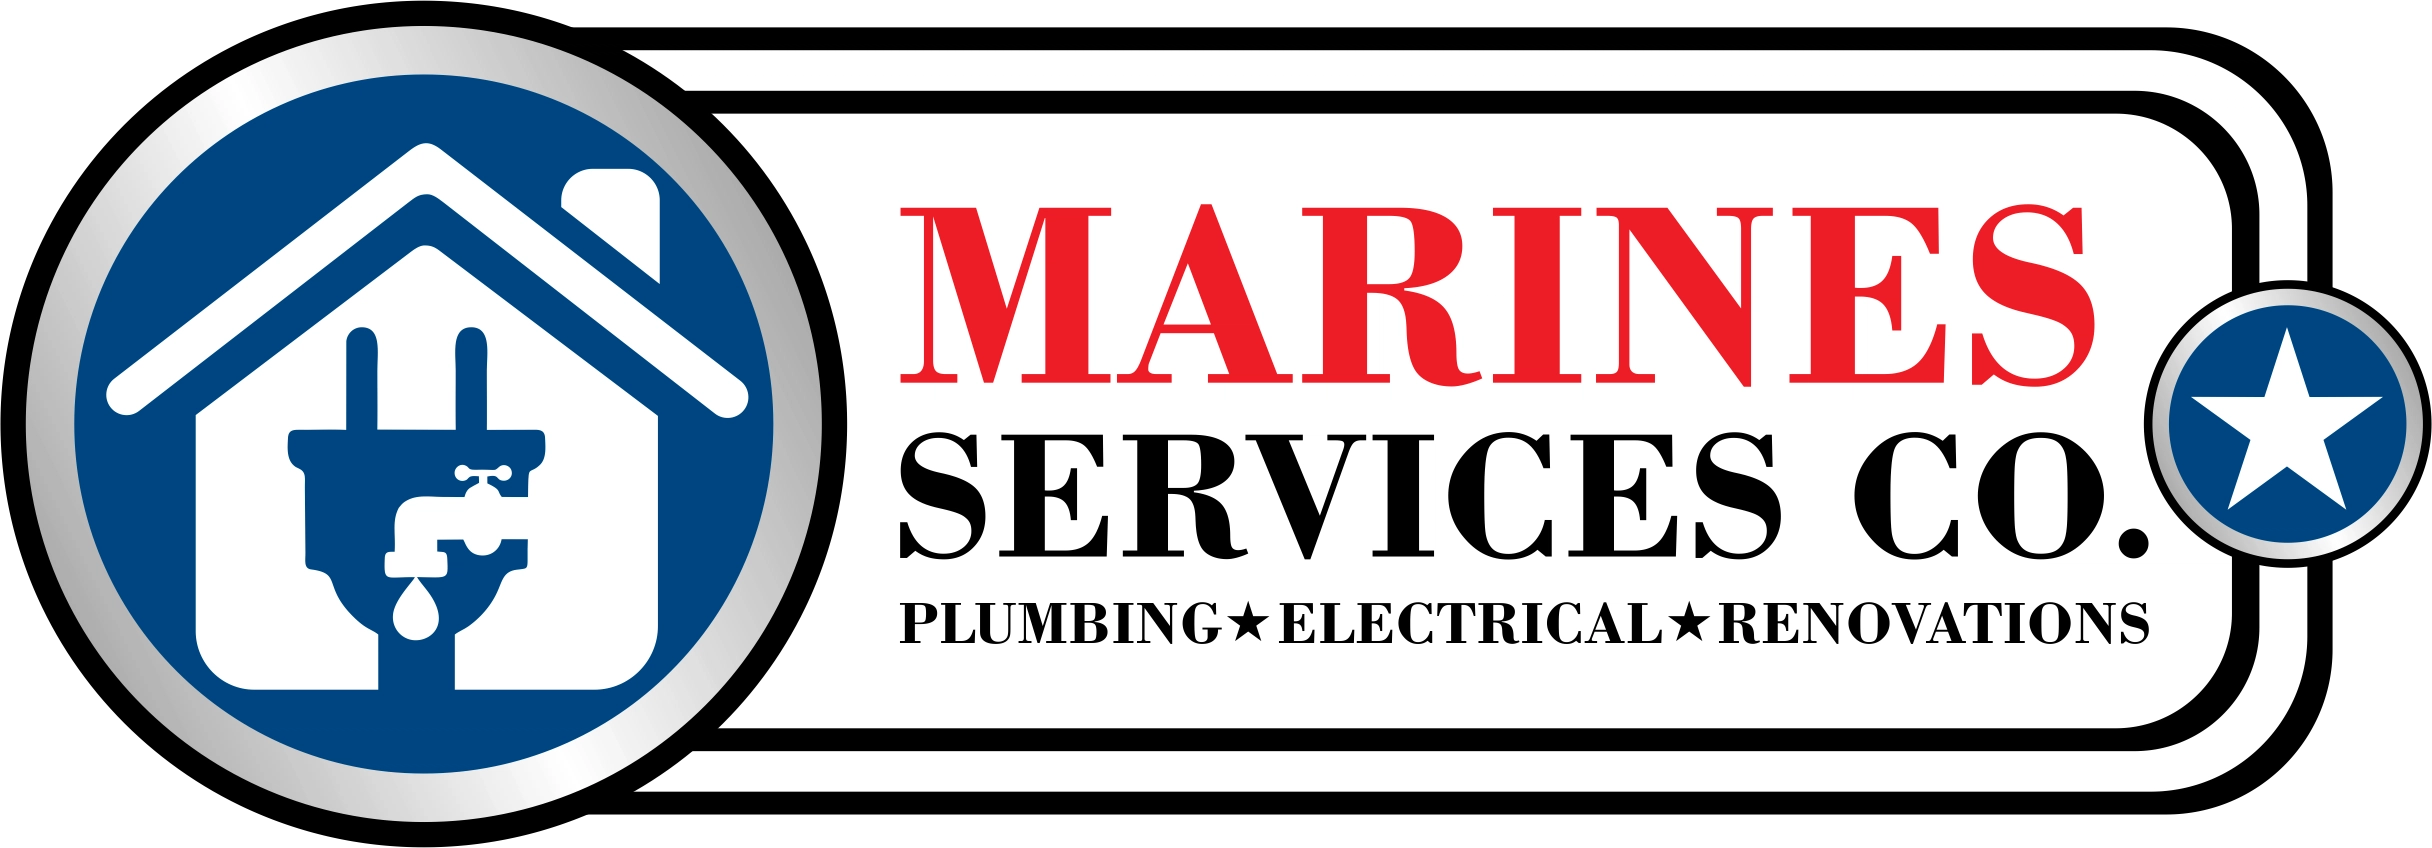 Marines Service Co. Logo